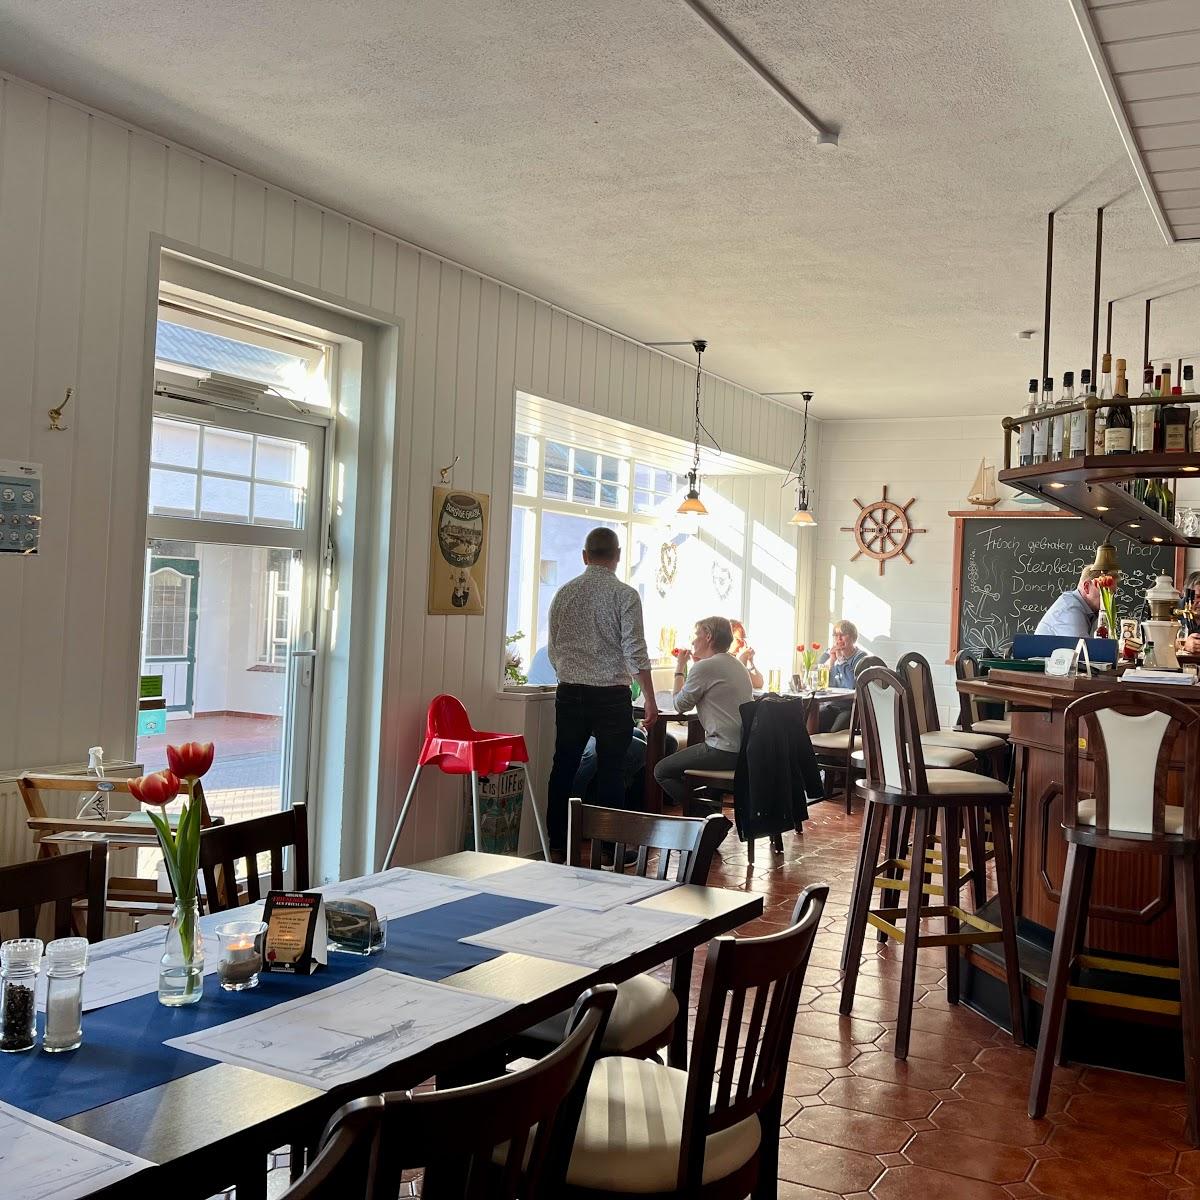 Restaurant "Zum Anker - Fischgaststätte Dieter Vogel" in Wangerland